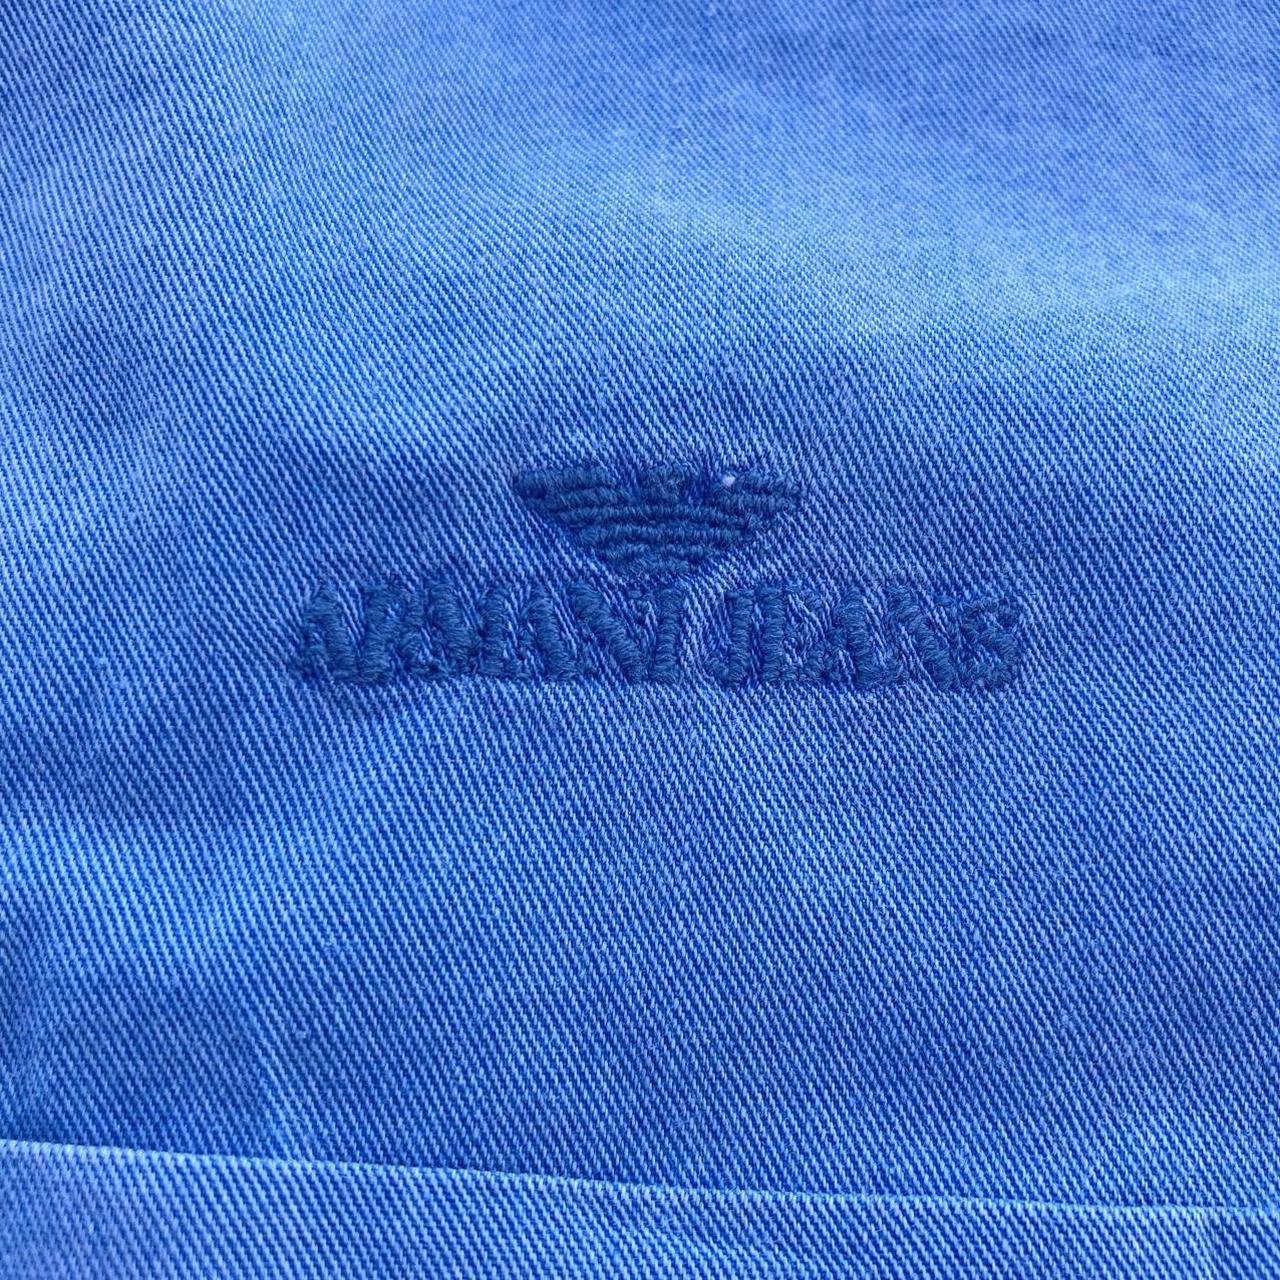 Armani Jeans Men's Blue Shirt | Depop